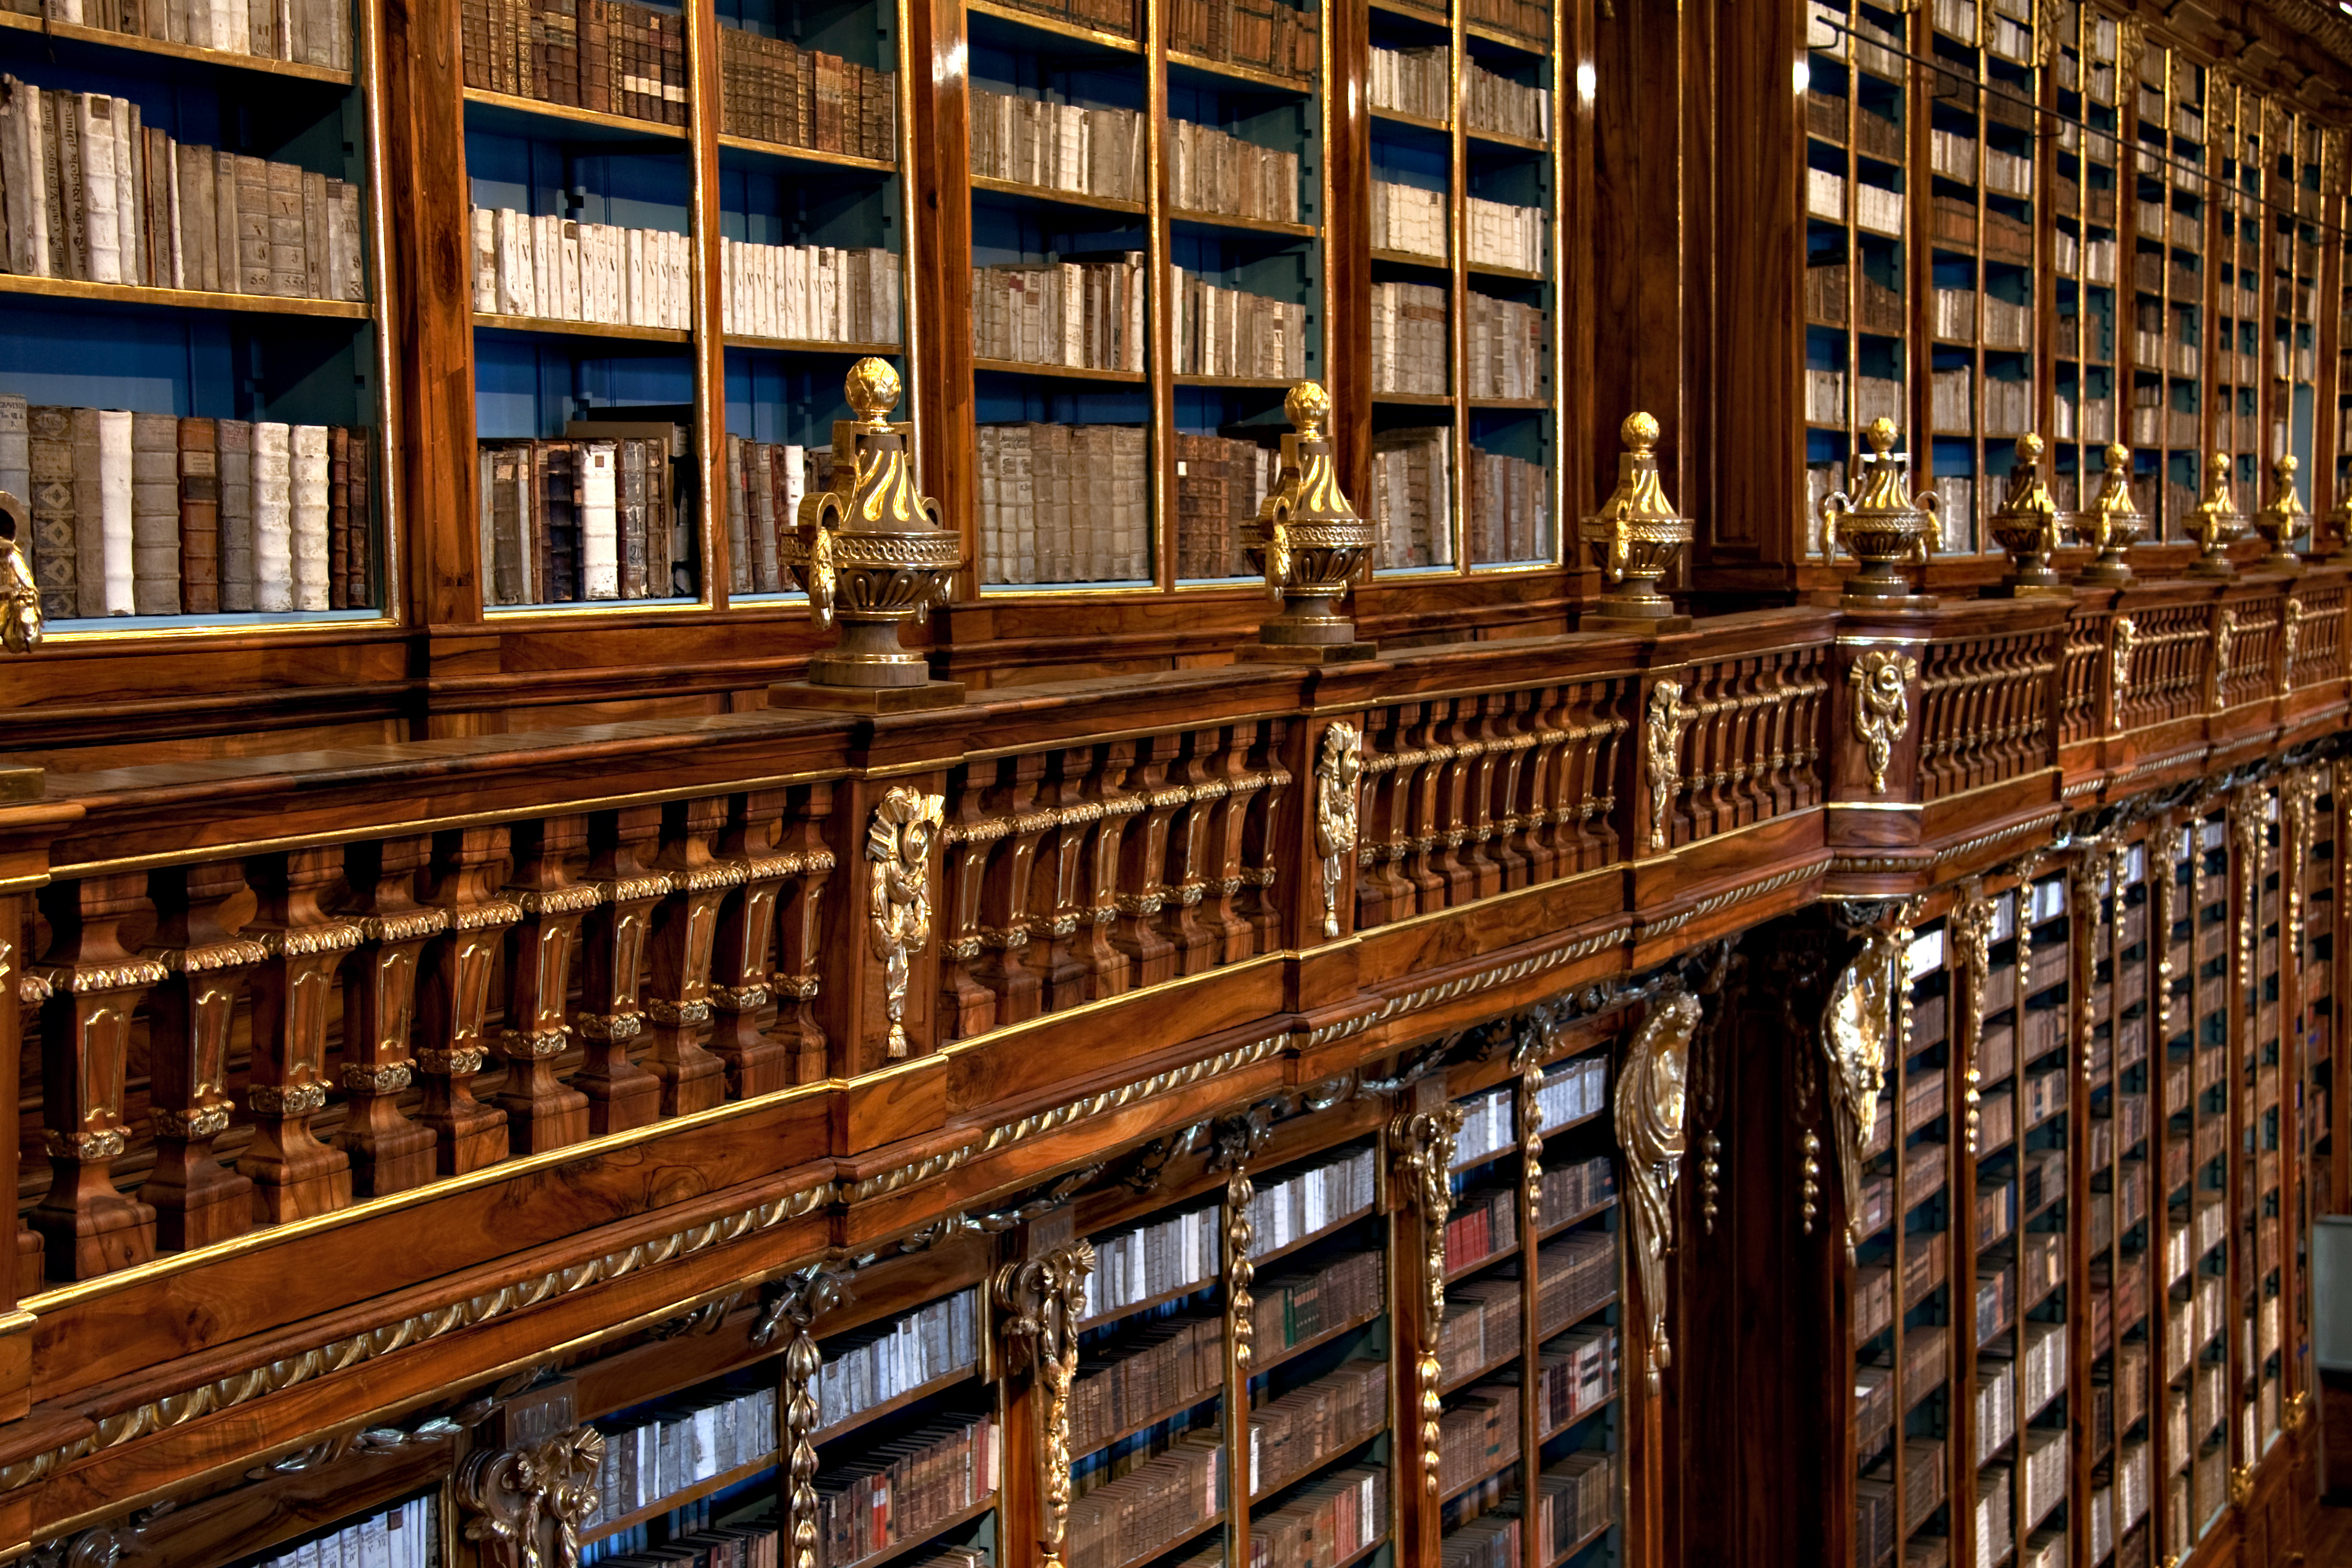 "Клементиум" – една от най-красивите библиотеки в света, която се намира в Прага.